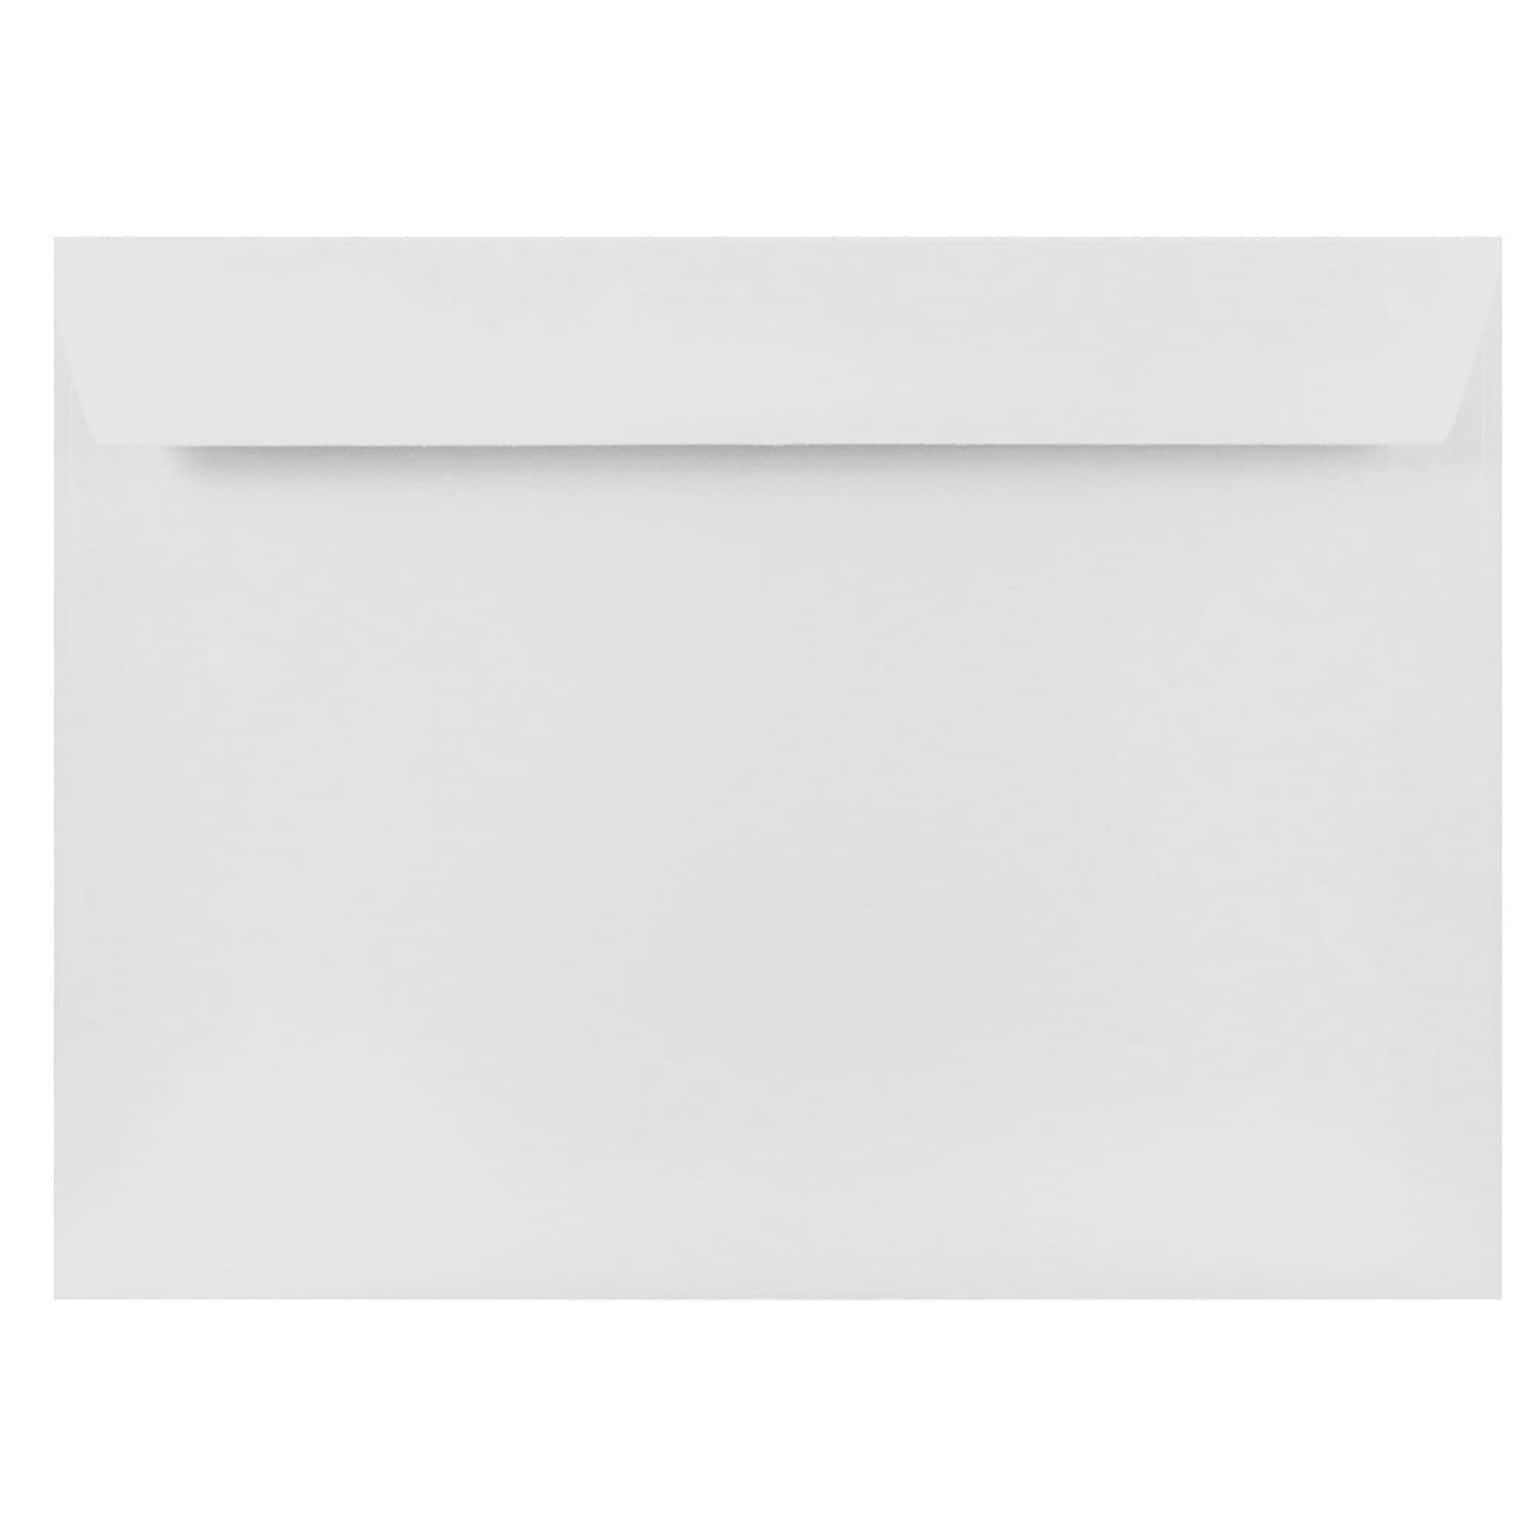 JAM Paper® 9 x 12 Booklet Strathmore Envelopes, Bright White Wove, 50/Pack (46974i)